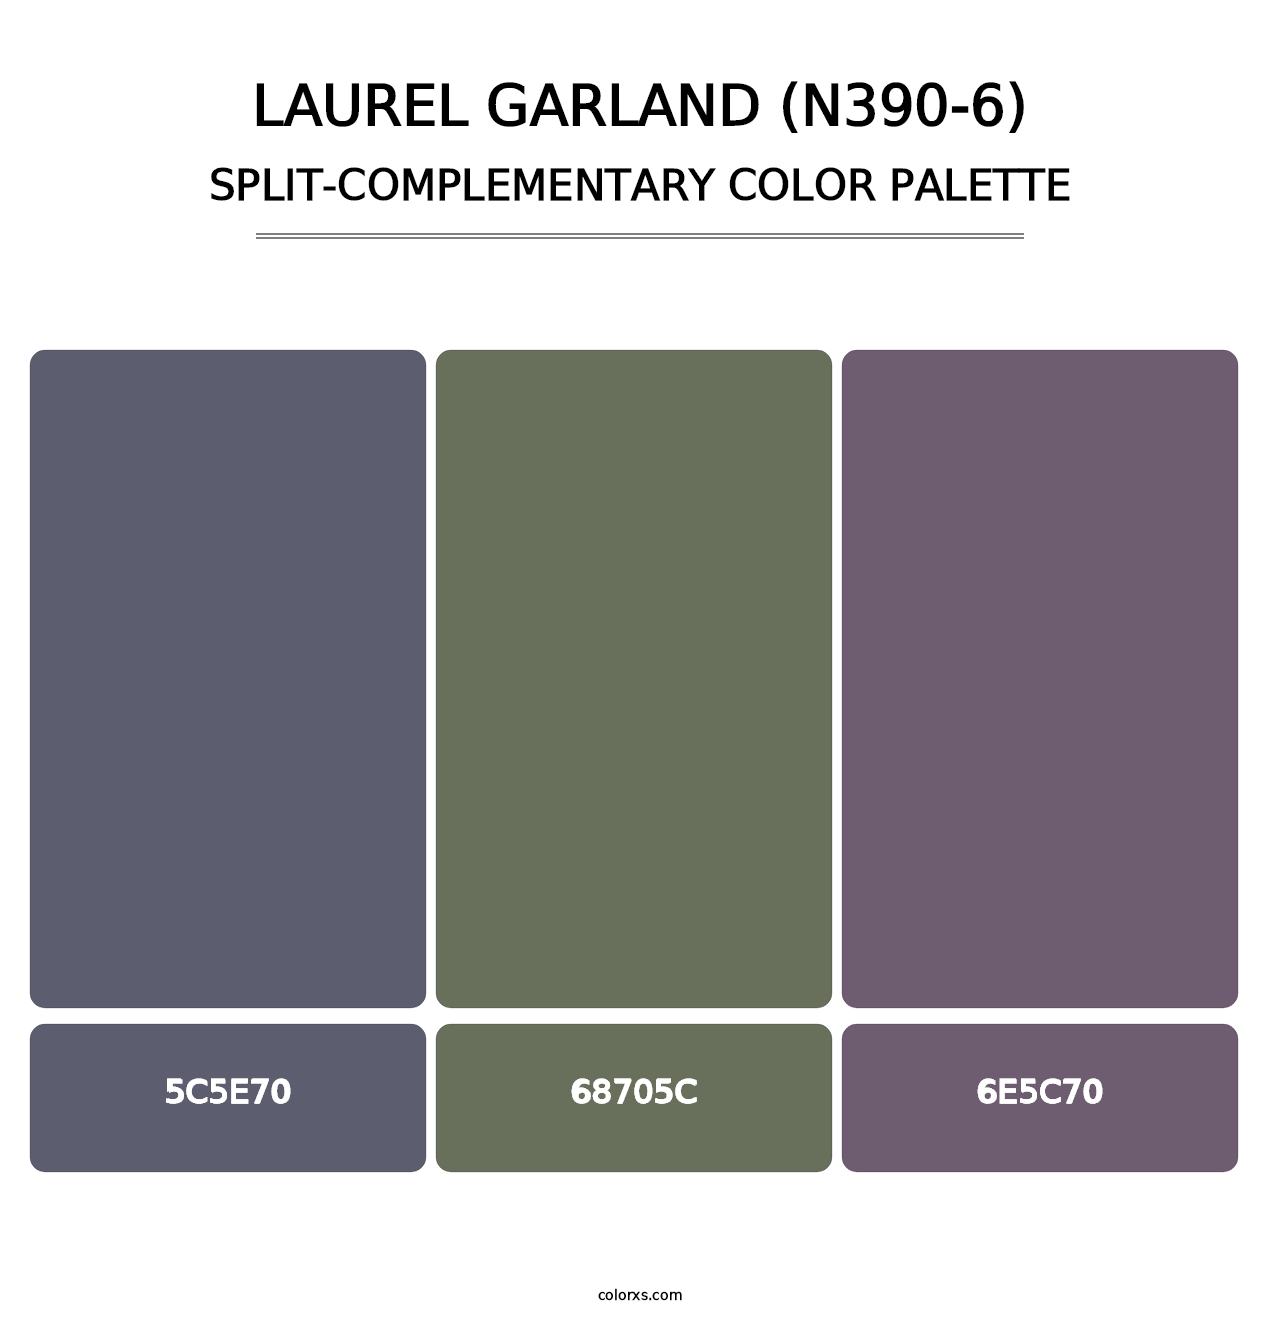 Laurel Garland (N390-6) - Split-Complementary Color Palette